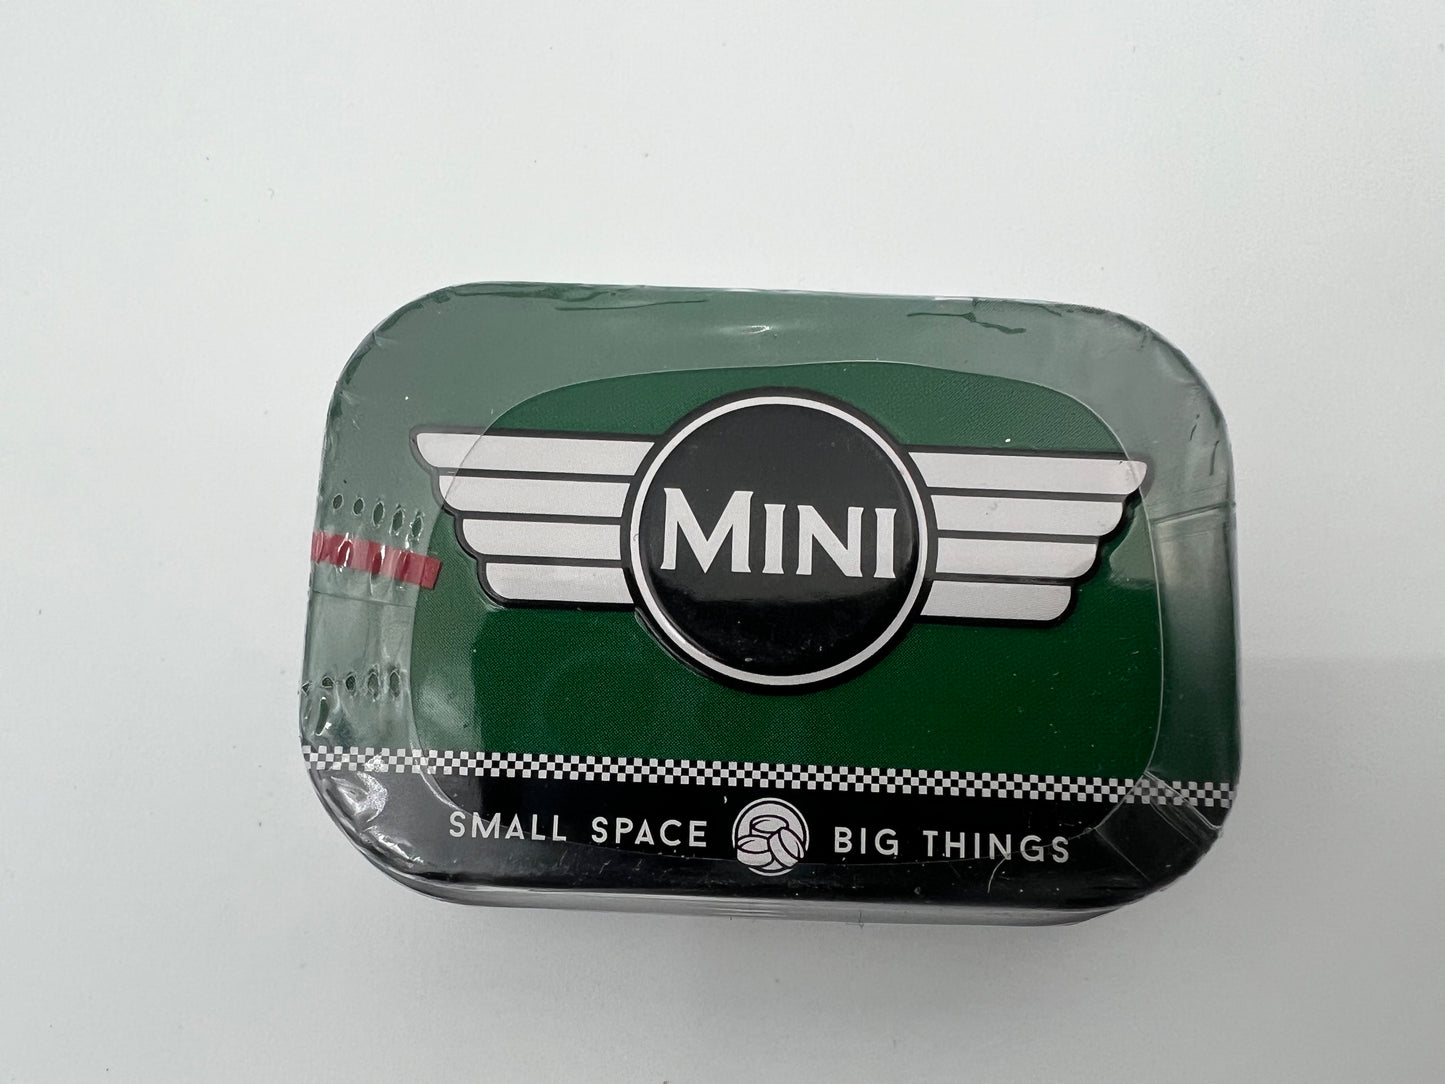 Blechdose "MINI" gefüllt mit Pfefferminzdragees